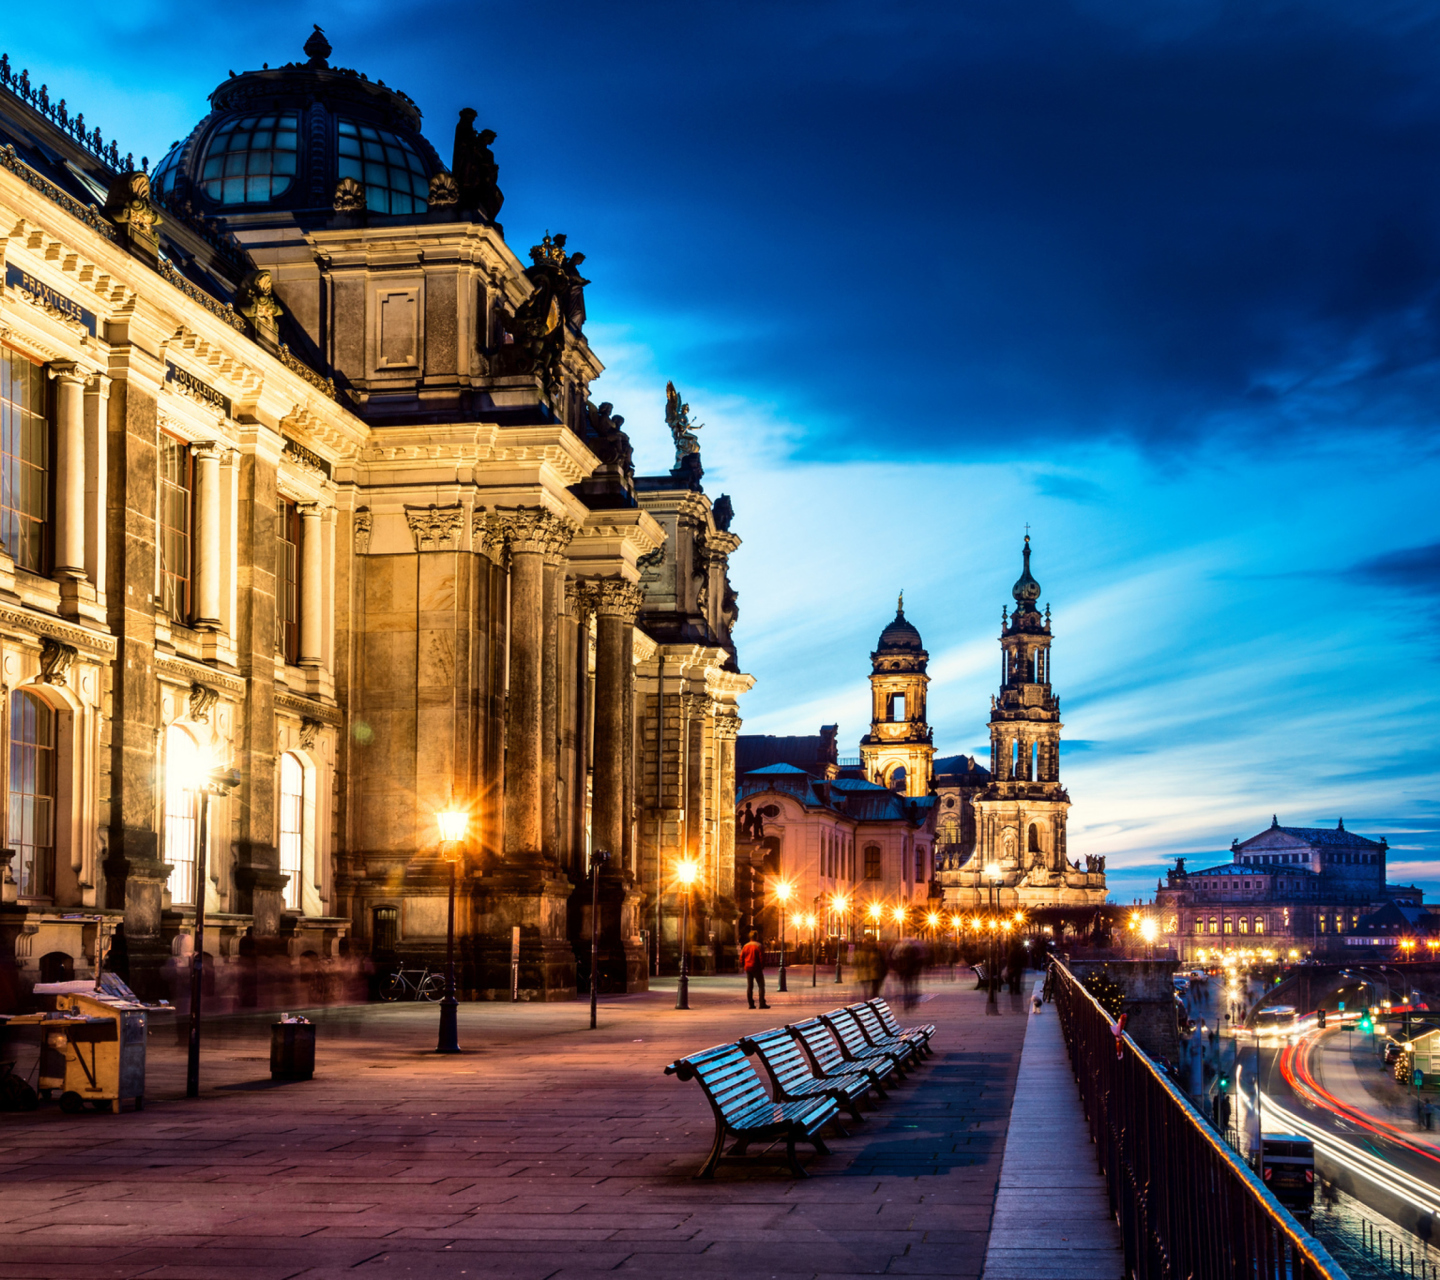 Altstadt, Dresden, Germany screenshot #1 1440x1280